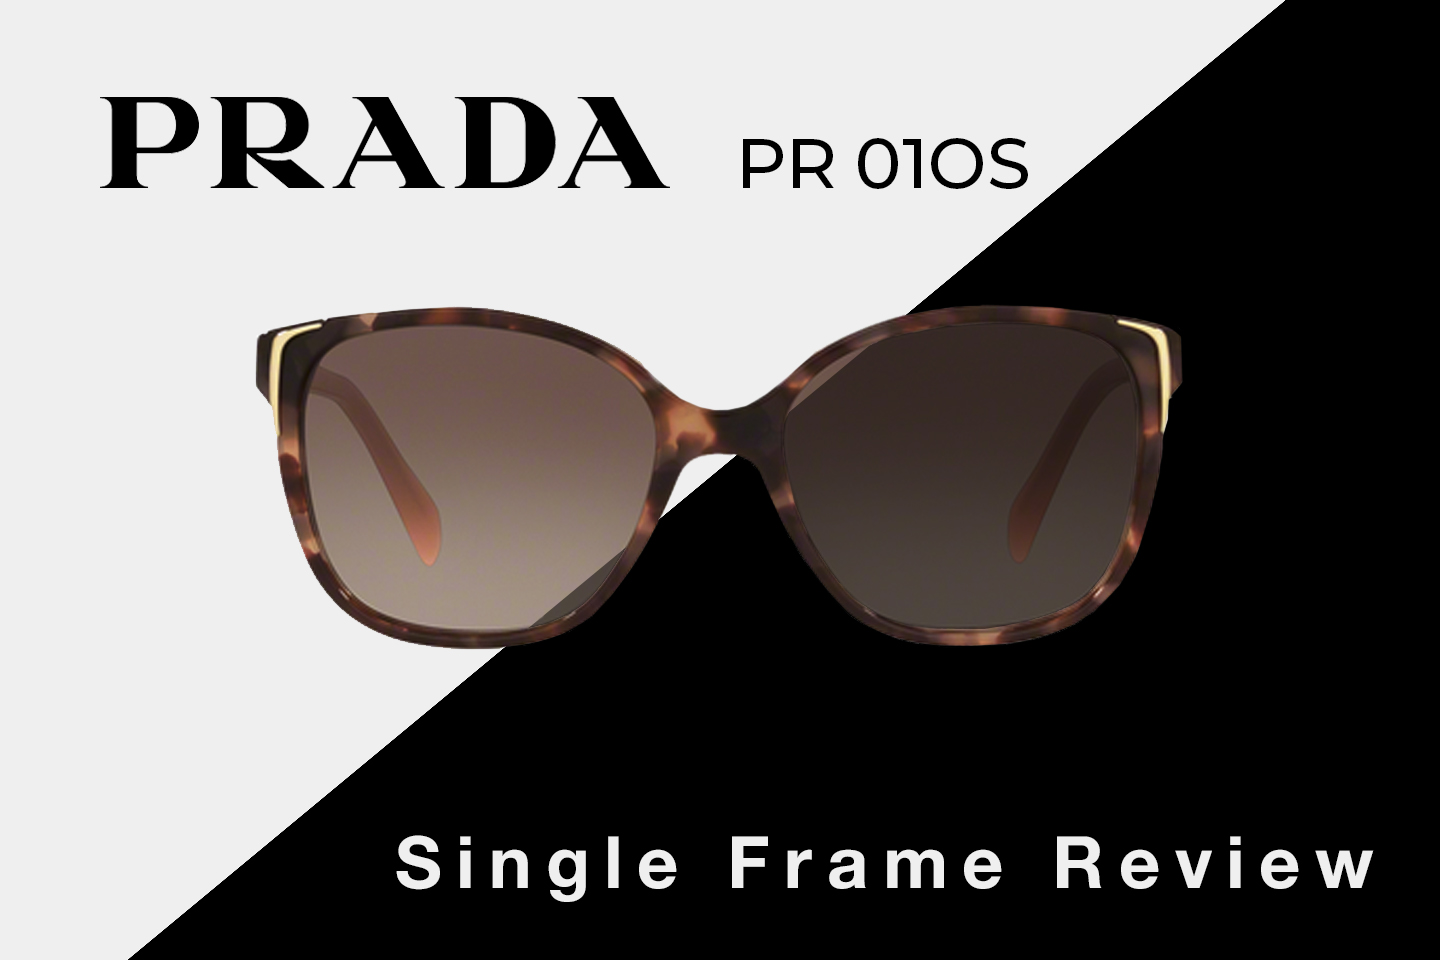 Prada PR 01OS Sunglasses Review | Prada Women's Square Sunglasses | SportRx